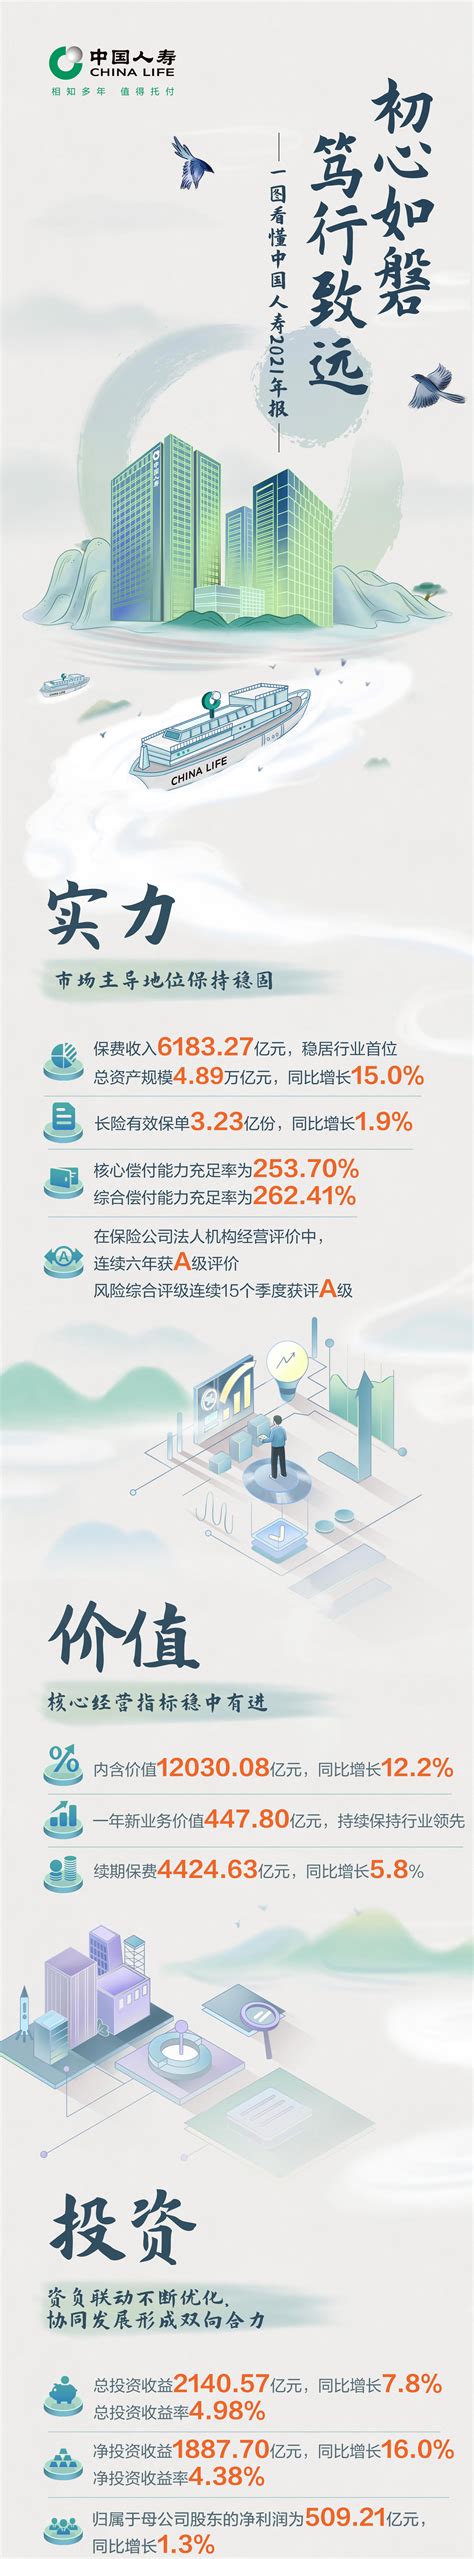 中国人寿客户节升级四大服务板块-保险频道-金融界